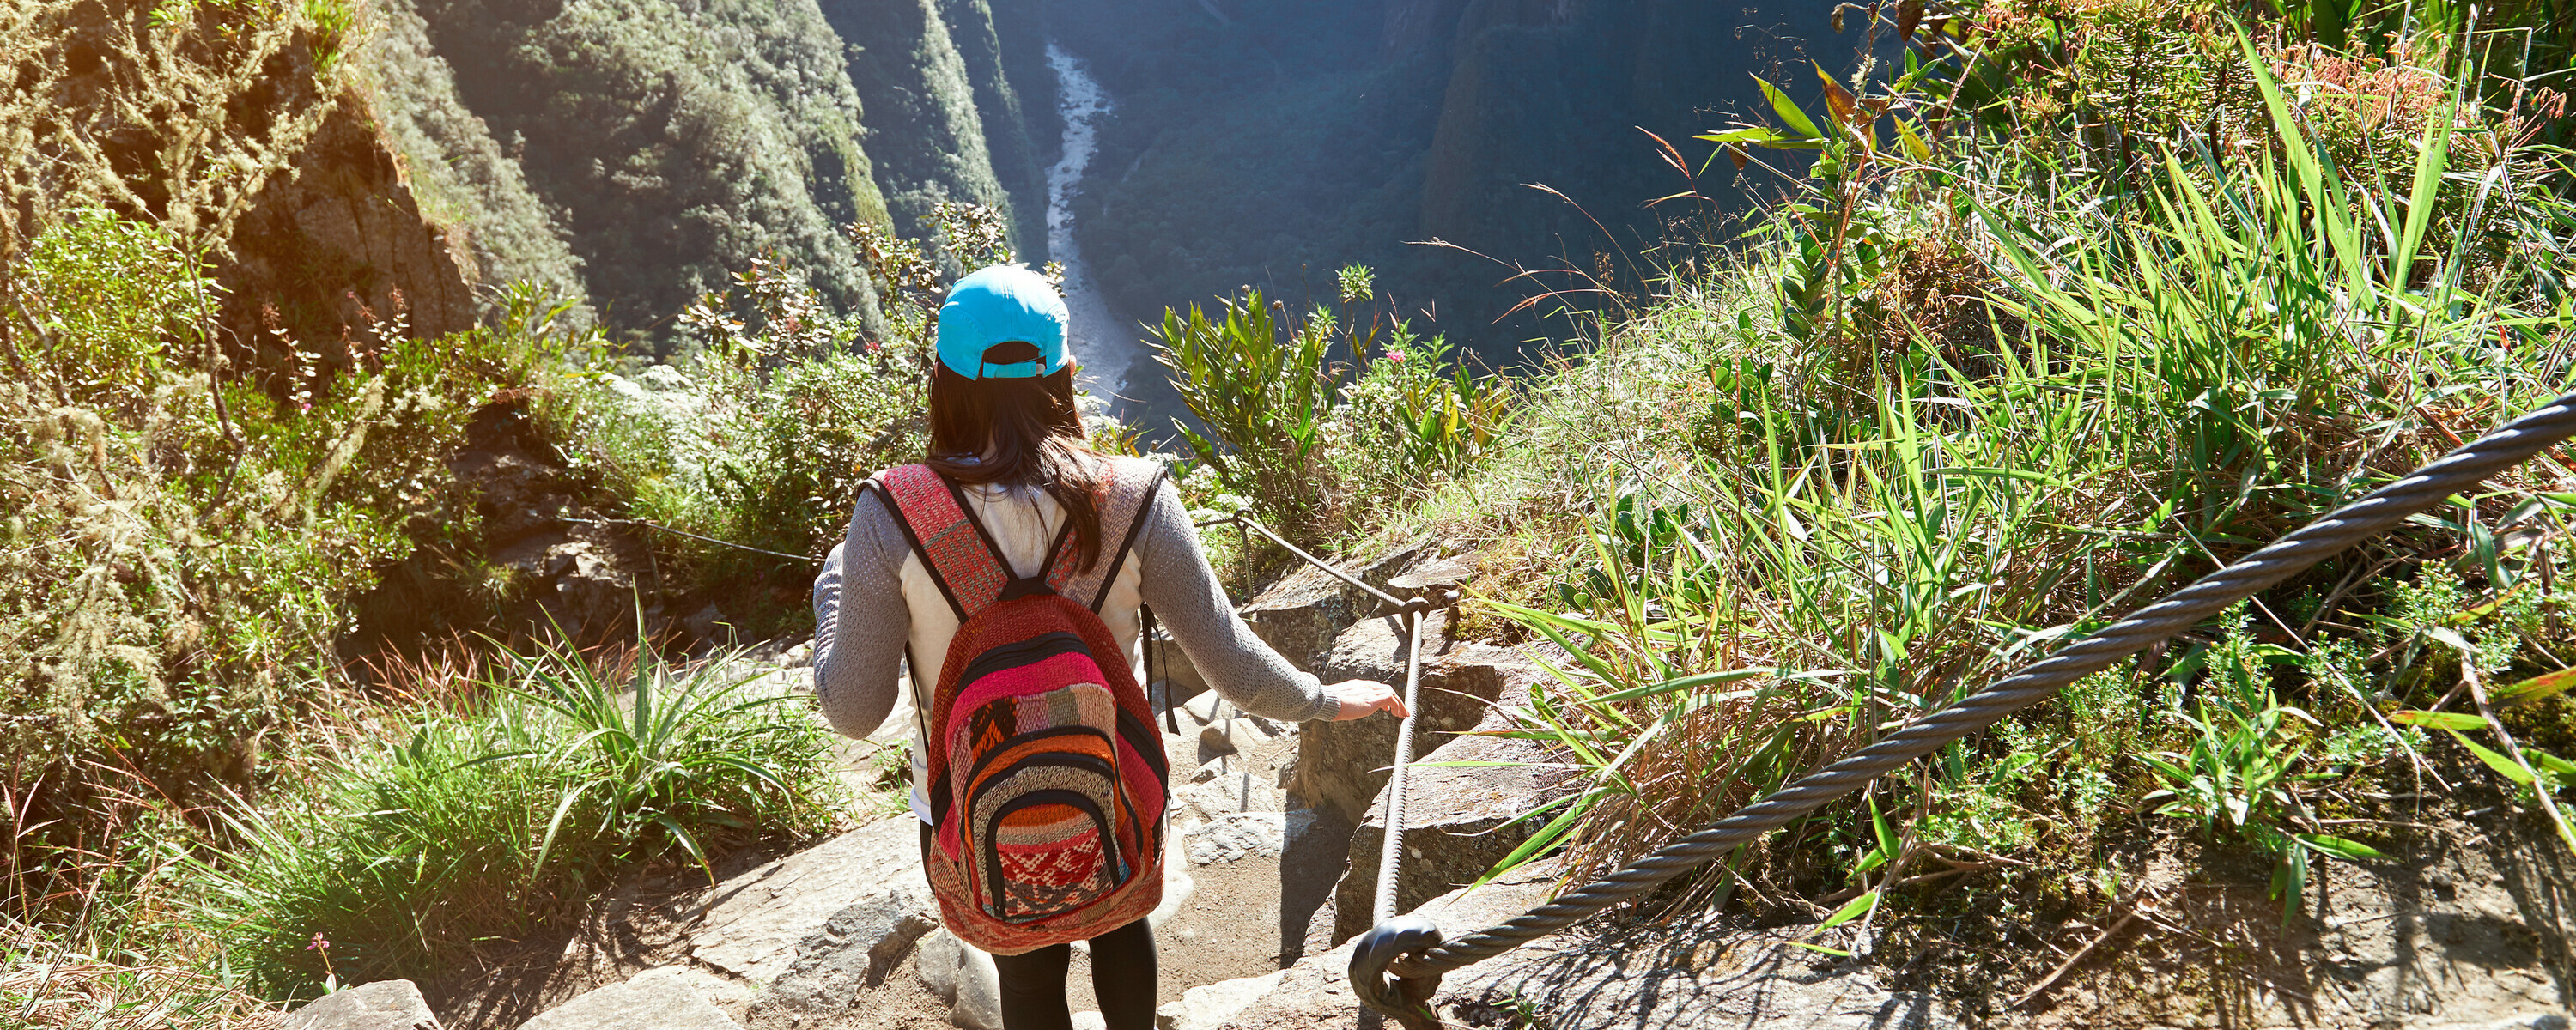 Inka-stien er en eldgammel vei som fører gjennom imponerende landskap og fører til de berømte ruiner av Machu Picchu.